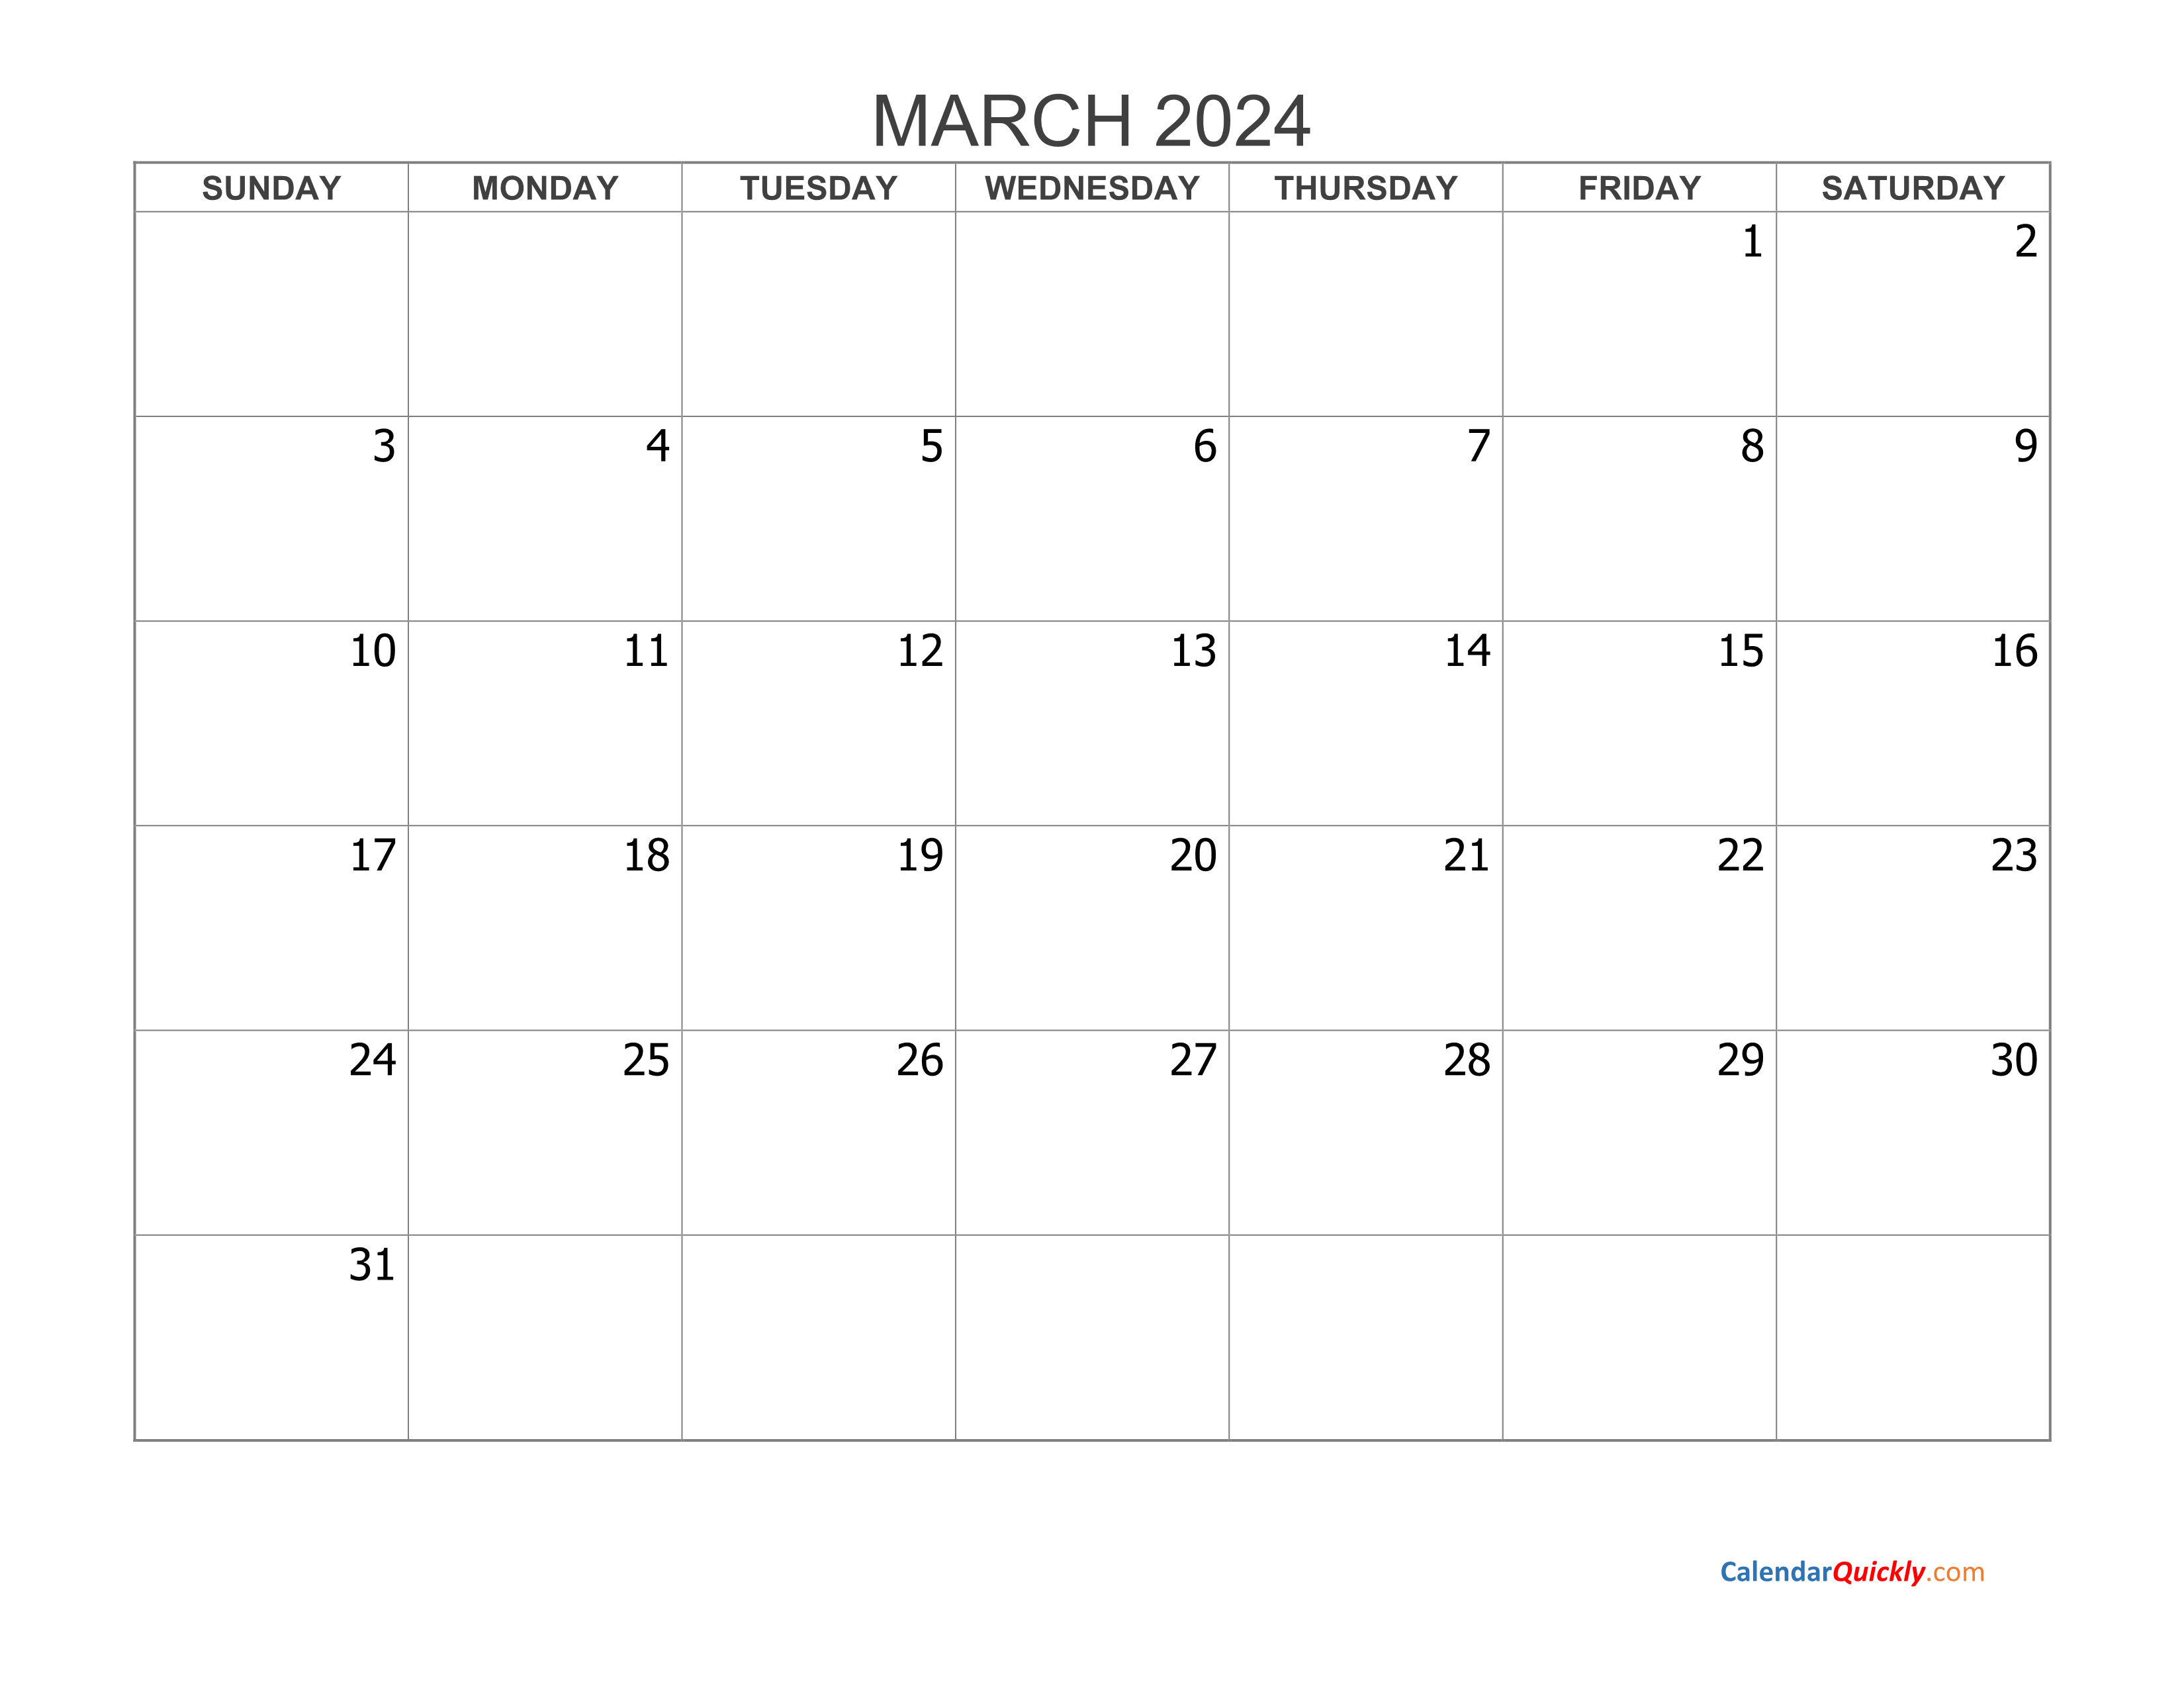 March 2024 Blank Calendar Calendar Quickly - Free Printable 2024 Calendar March